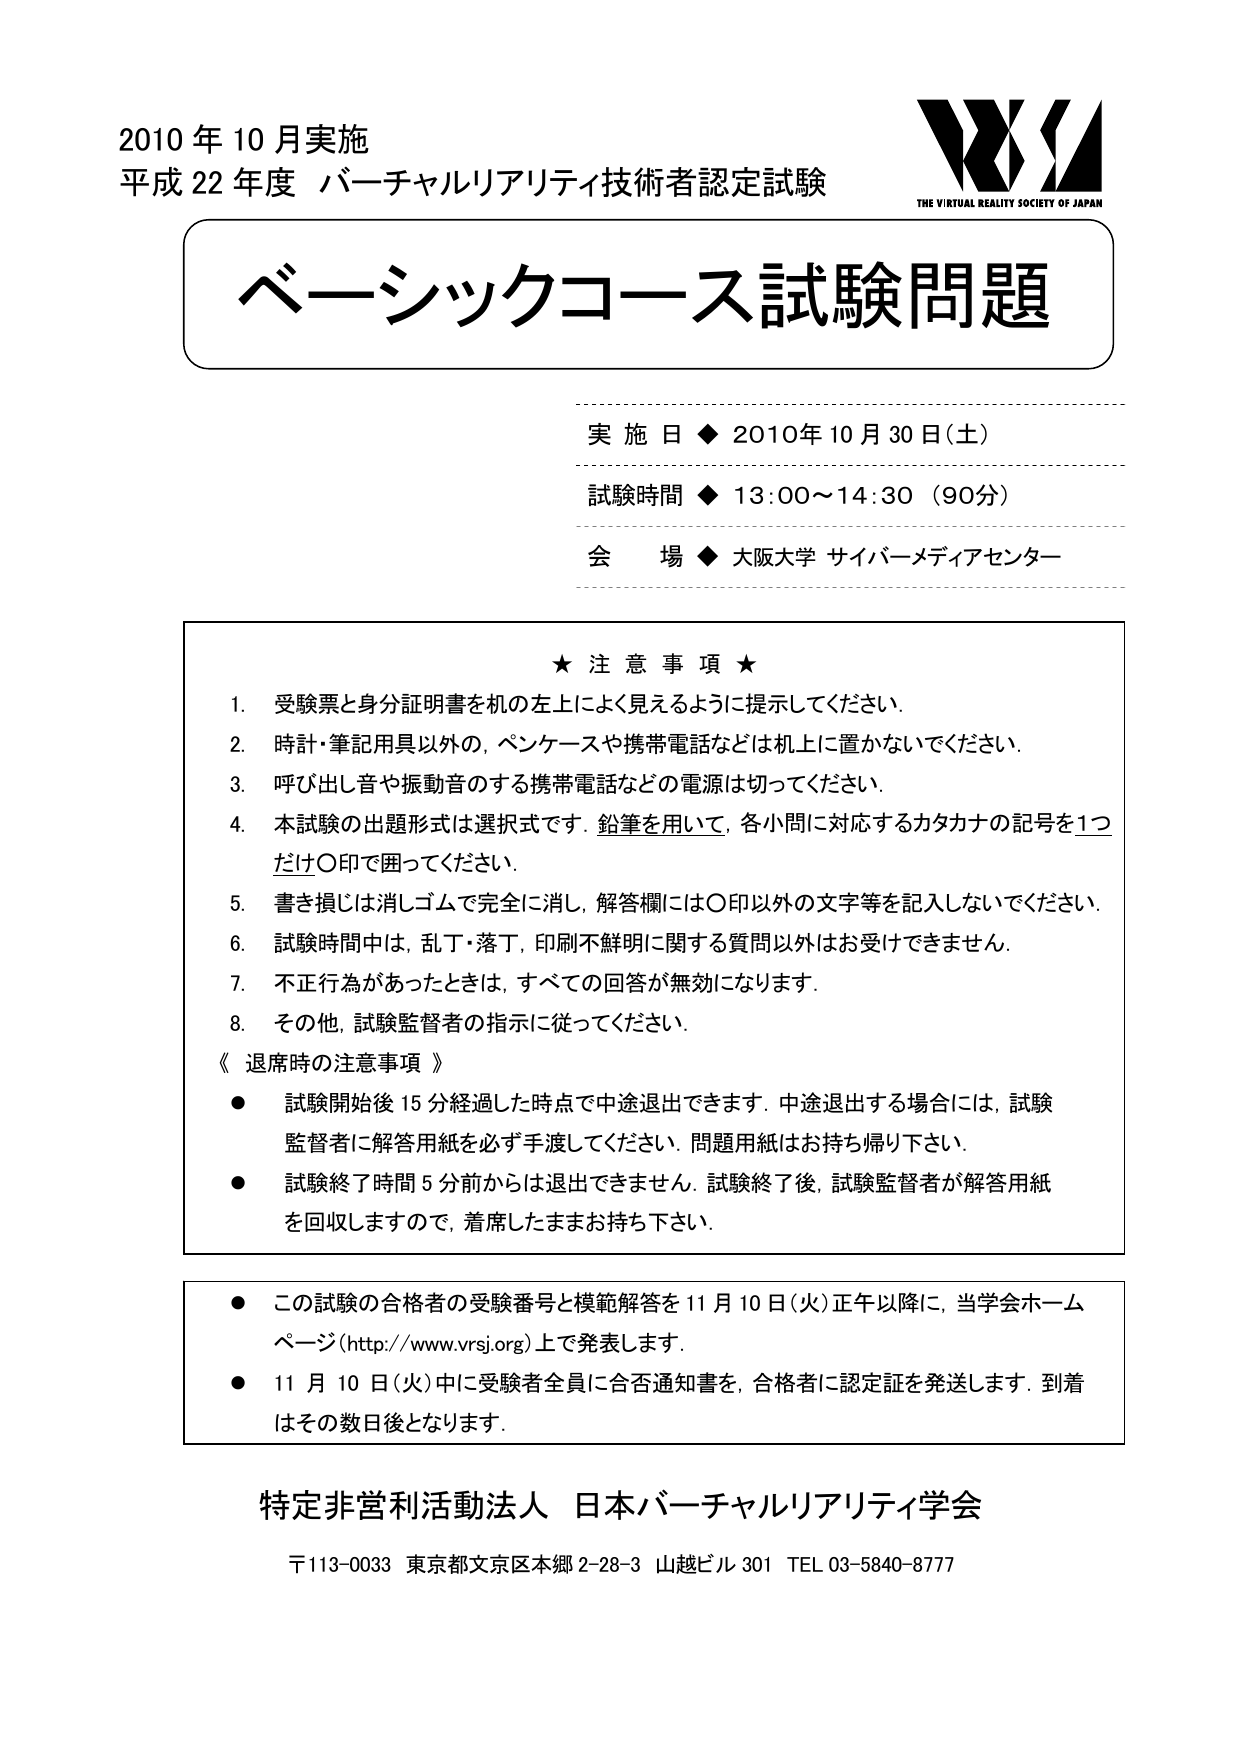 ベーシックコース試験問題 日本バーチャルリアリティ学会